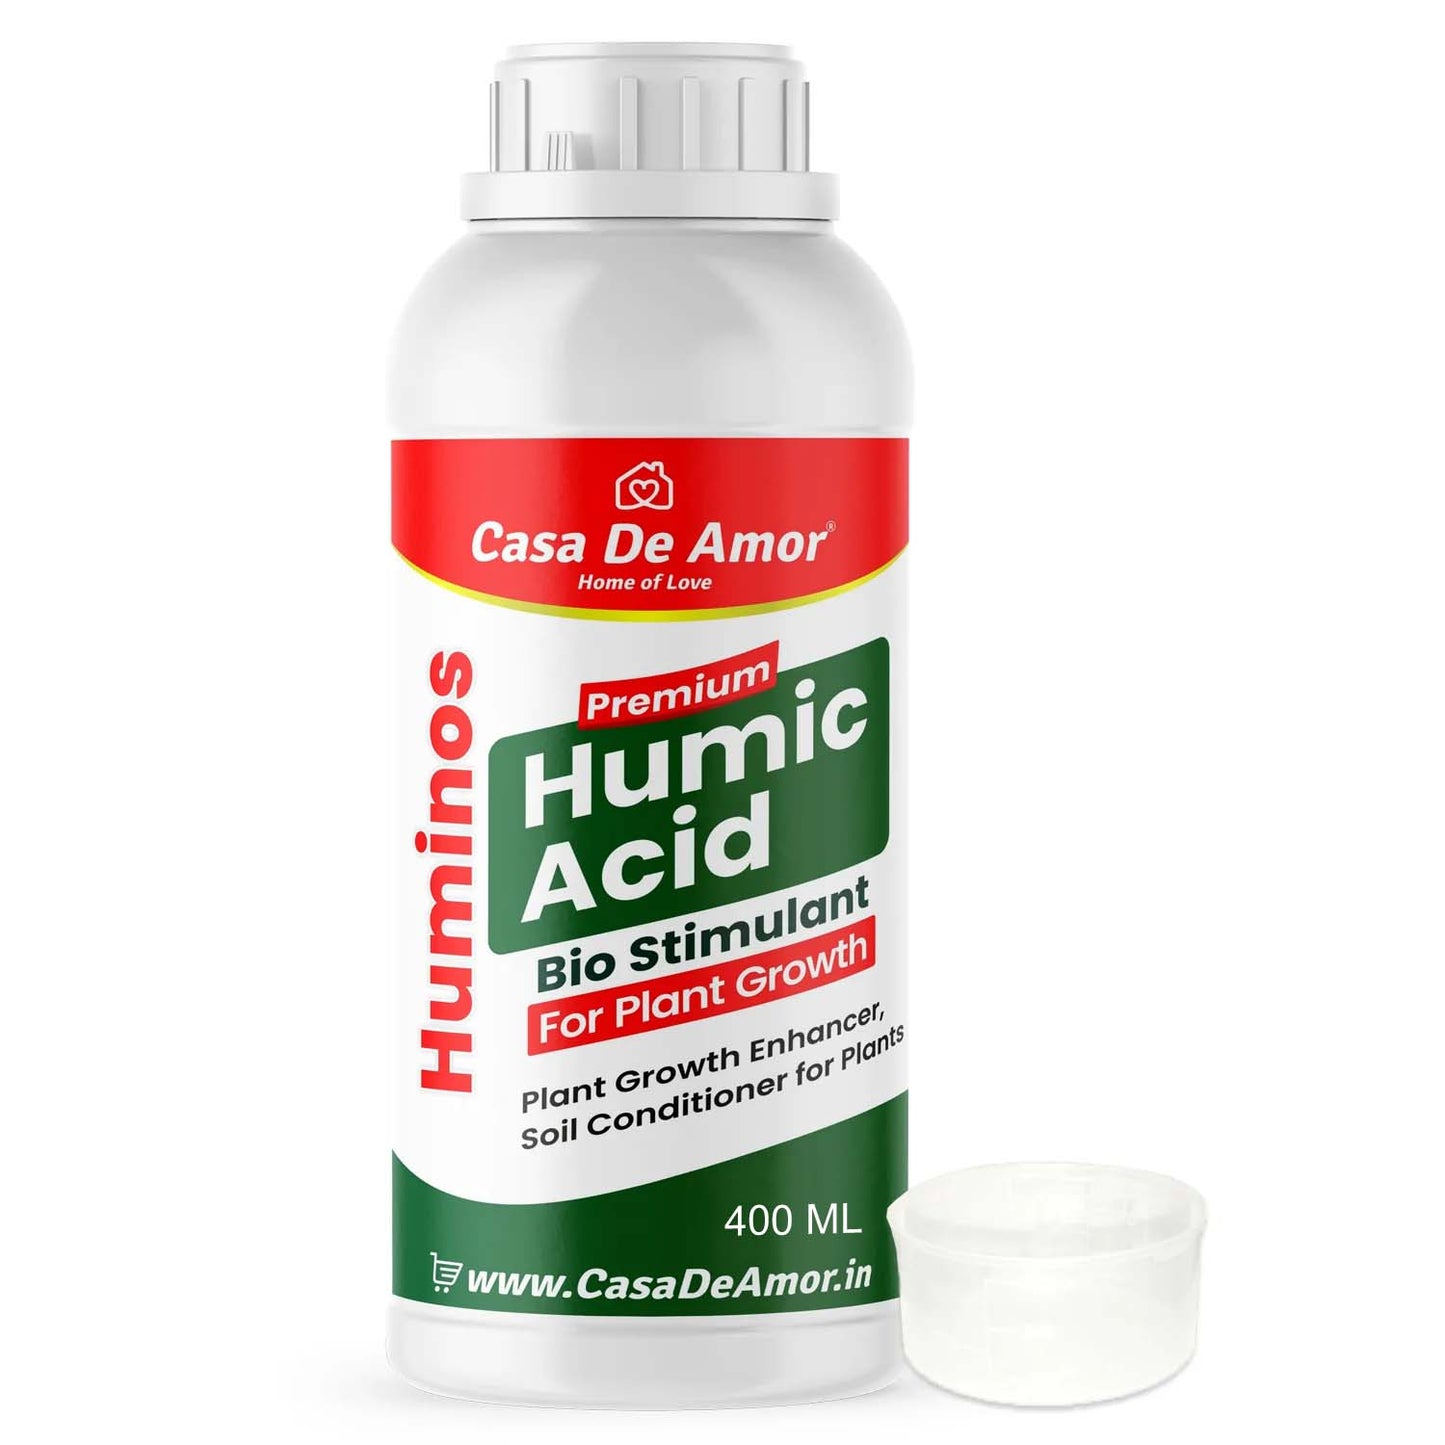 Casa De Amor Liquid Humic Acid Bio-Fertilizer for Plants and Root Growth Promoter